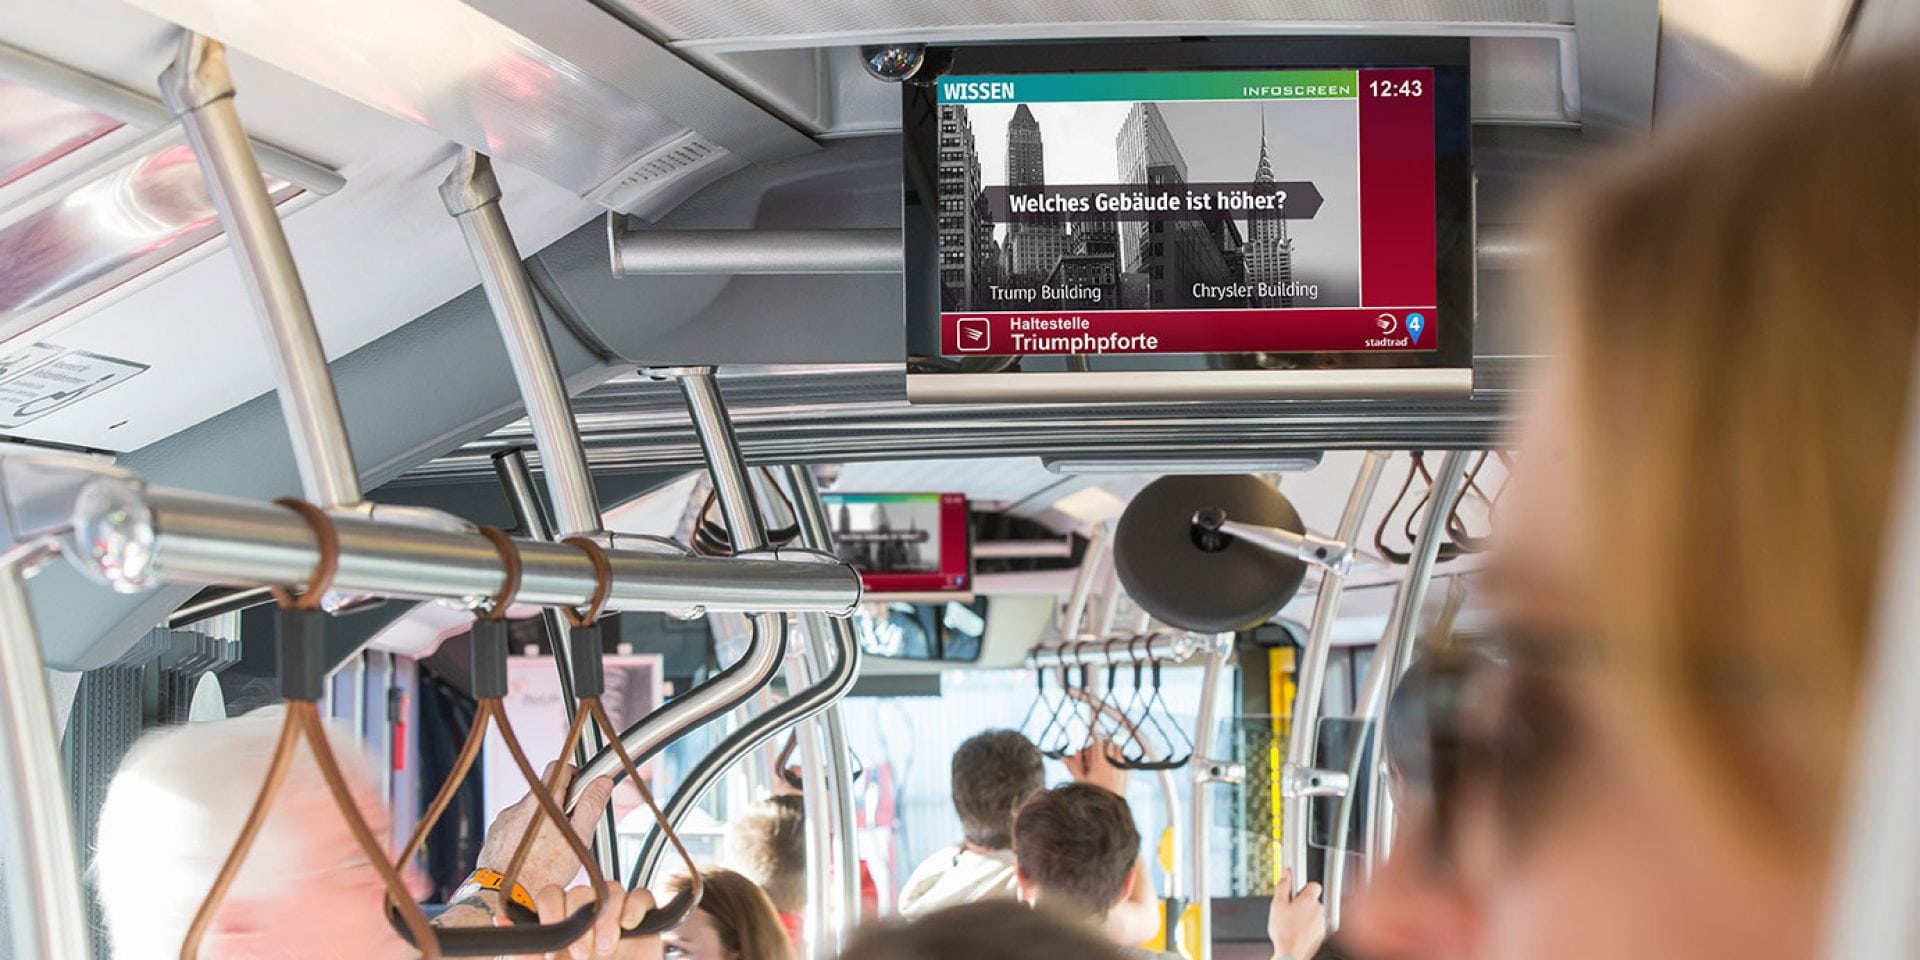 Beč: Istorijat ulica na digitalnim ekranima javnog prevoza 1